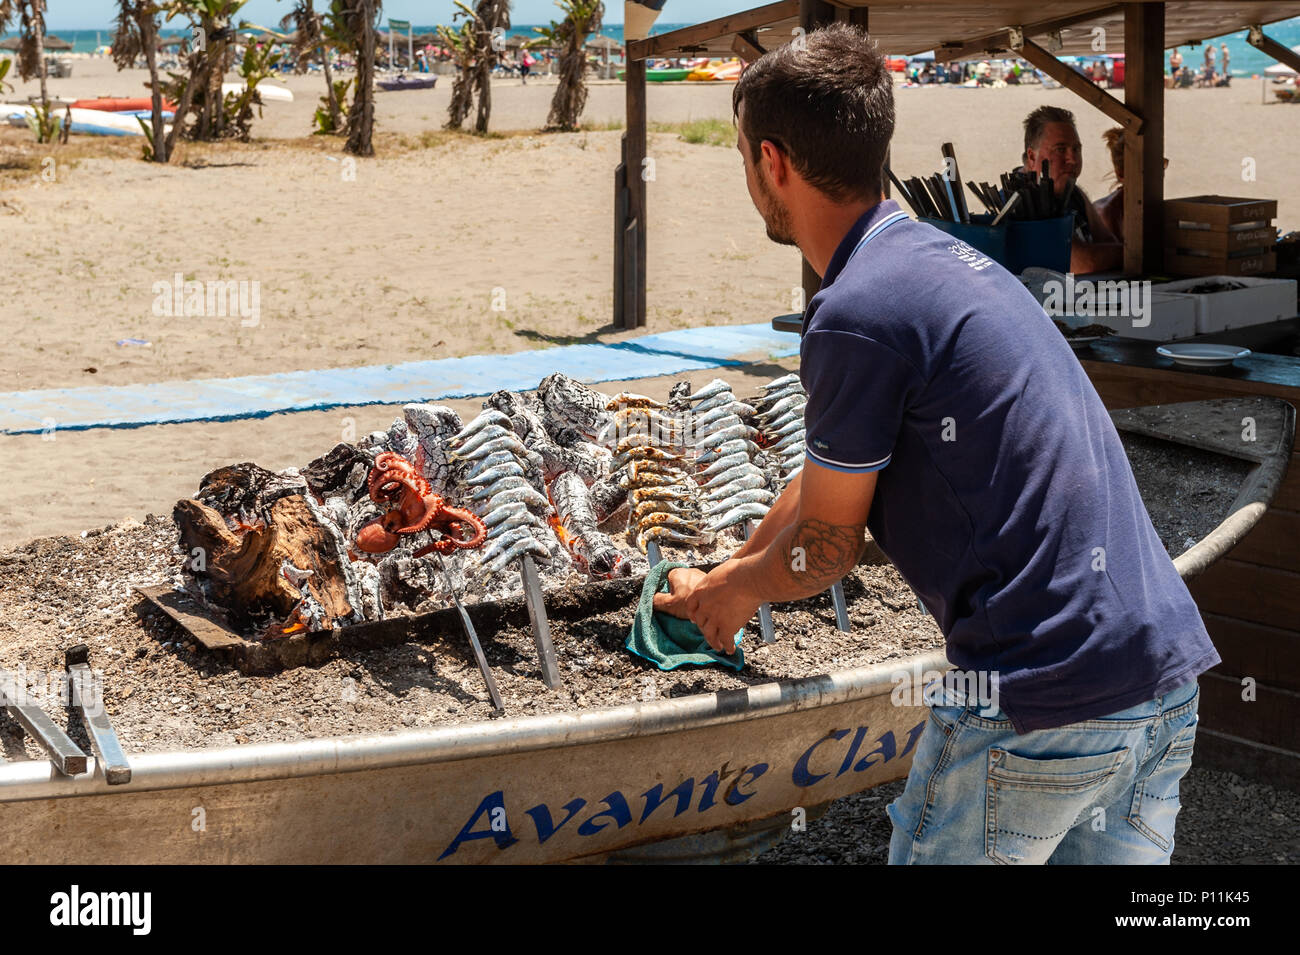 Man cooking sardines et le poulpe sur un barbecue sur la plage de Malaga, Axarquía, la Cala del Moral municipalité de Rincón de la Victoria, Malaga, Espagne Banque D'Images